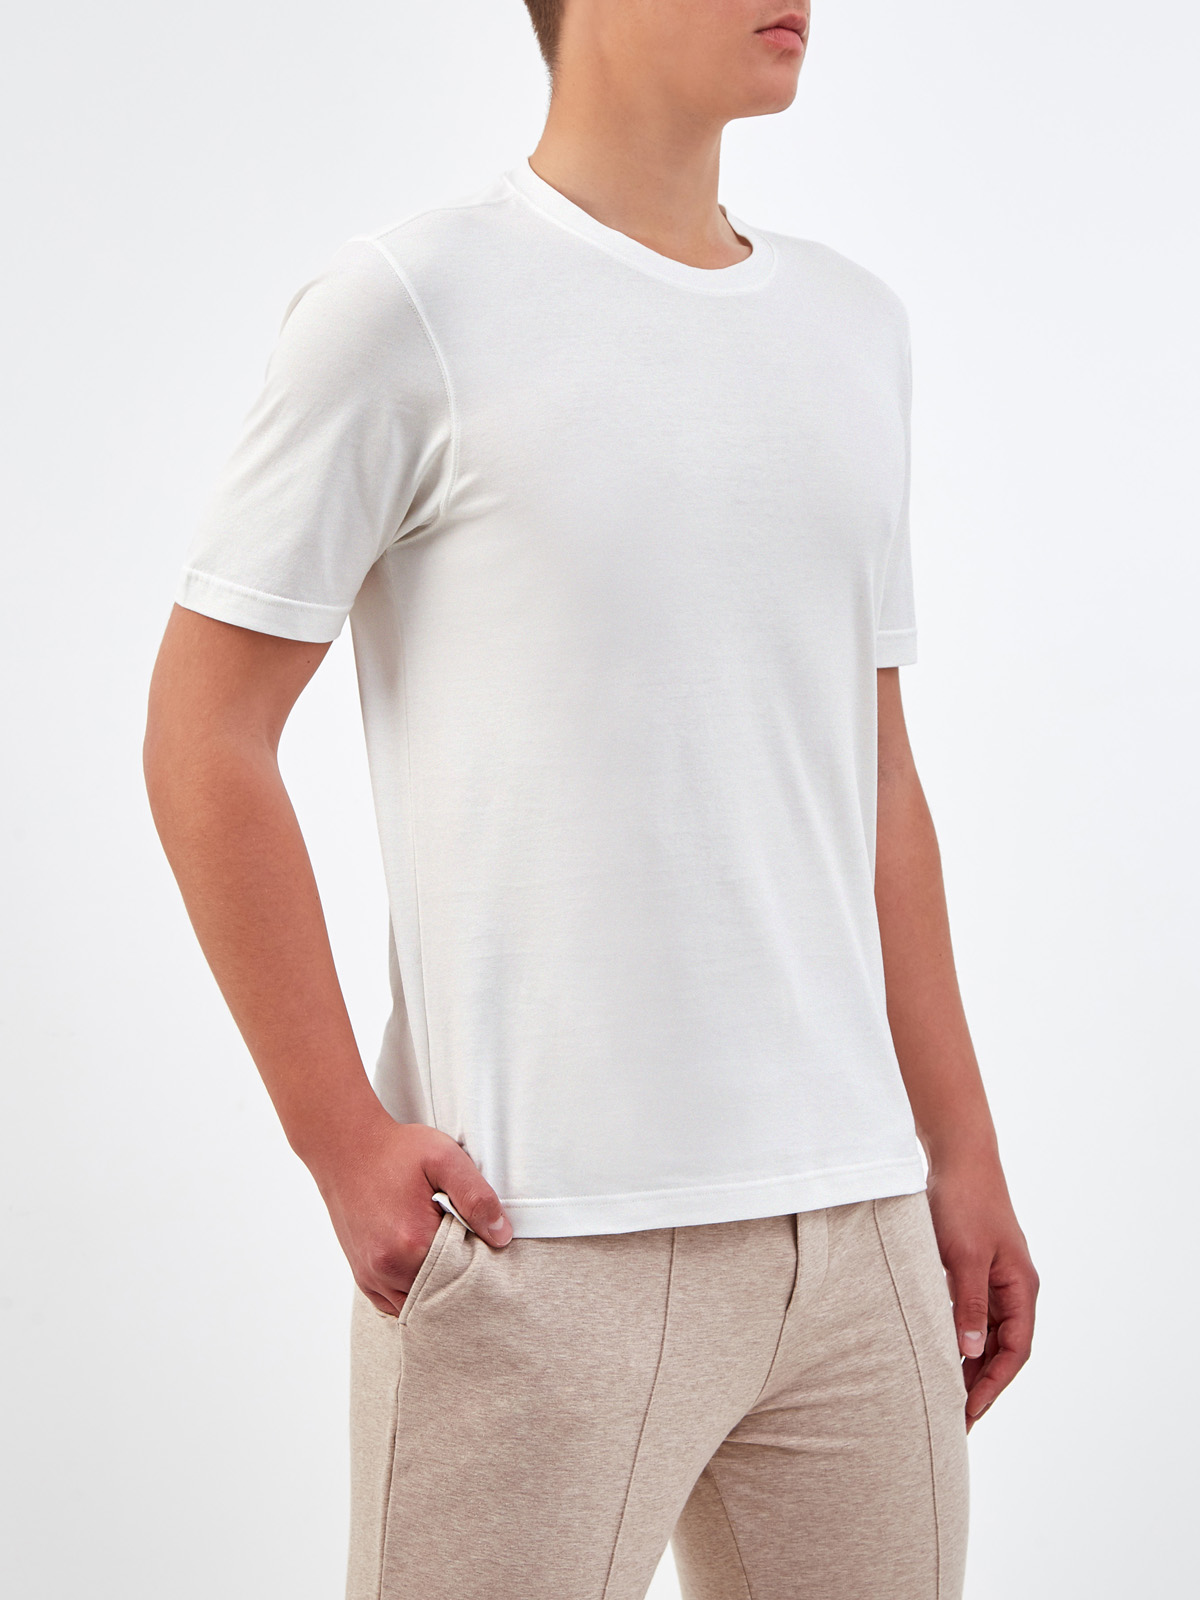 Базовая белая футболка из гладкого хлопка джерси GRAN SASSO, цвет белый, размер 54;56;58;48 - фото 3